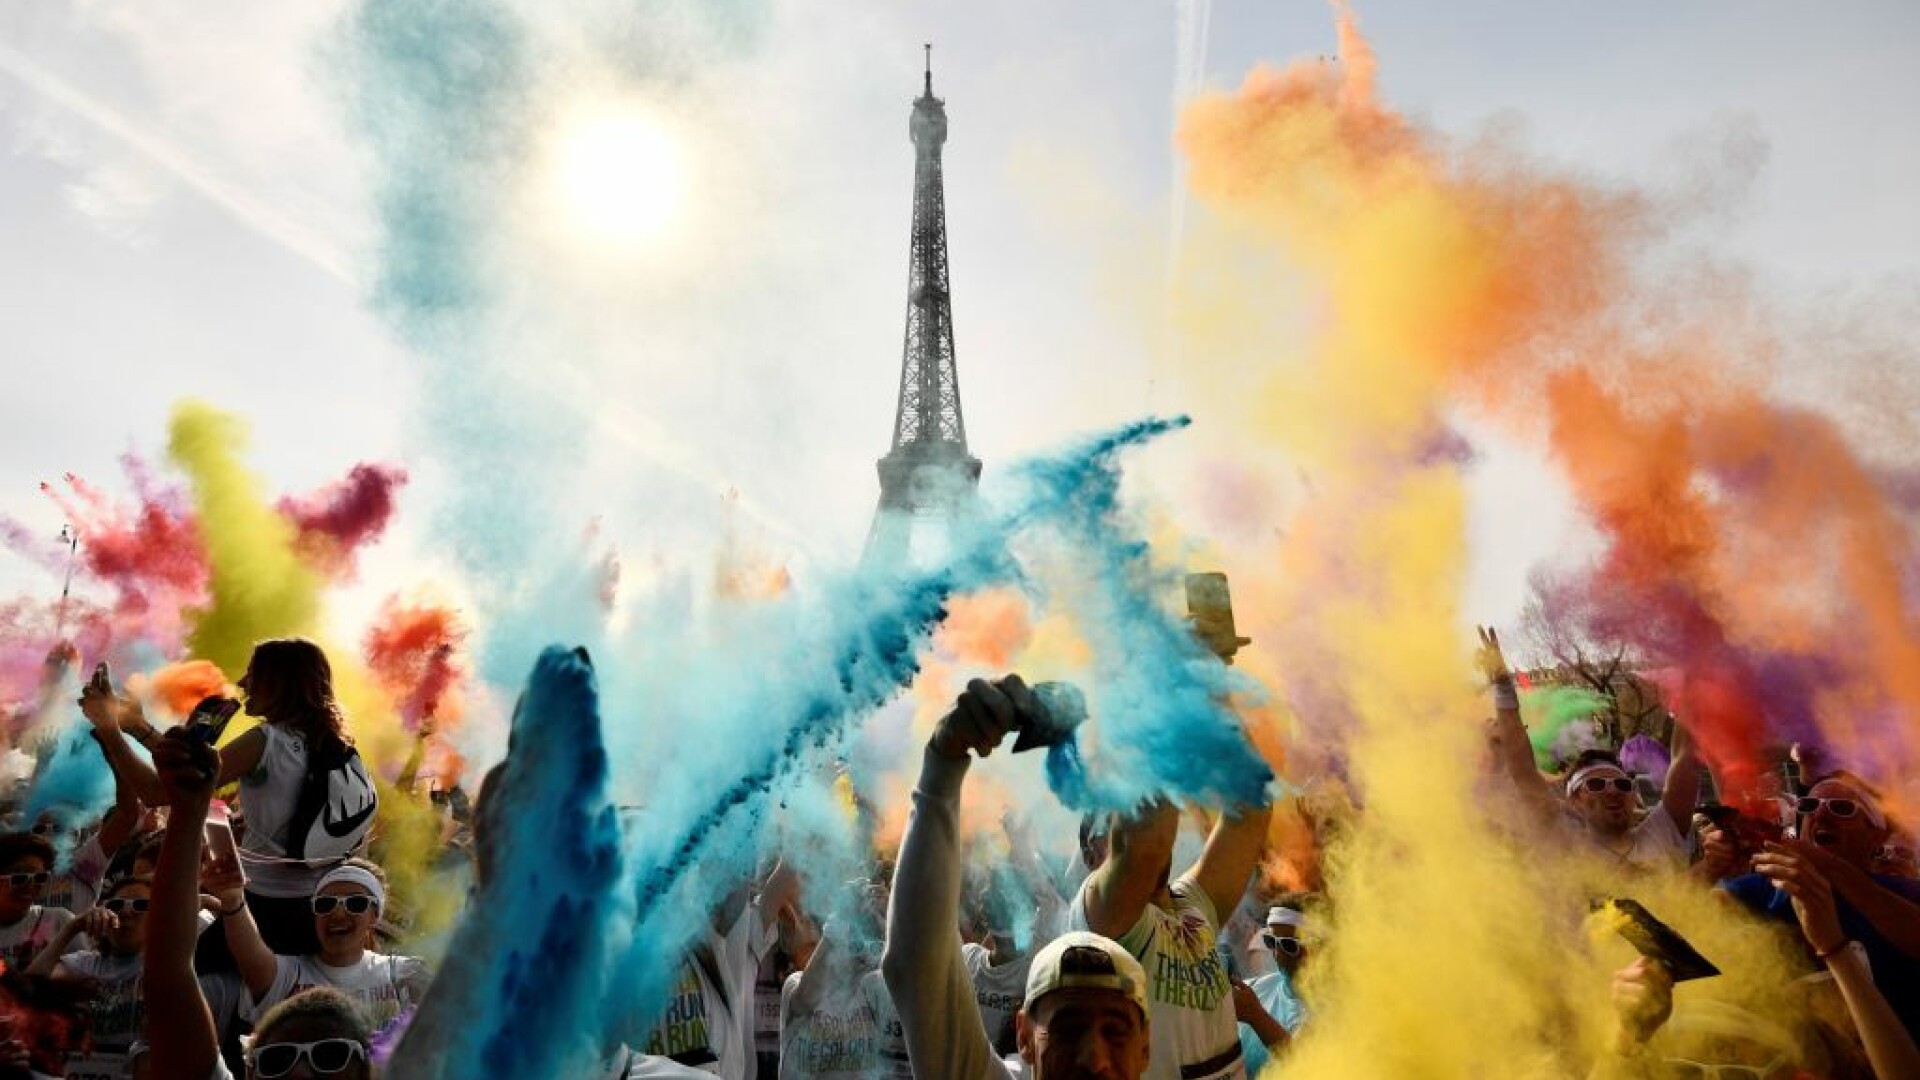 Bătaie cu pudră colorată, la Turnul Eiffel din Paris